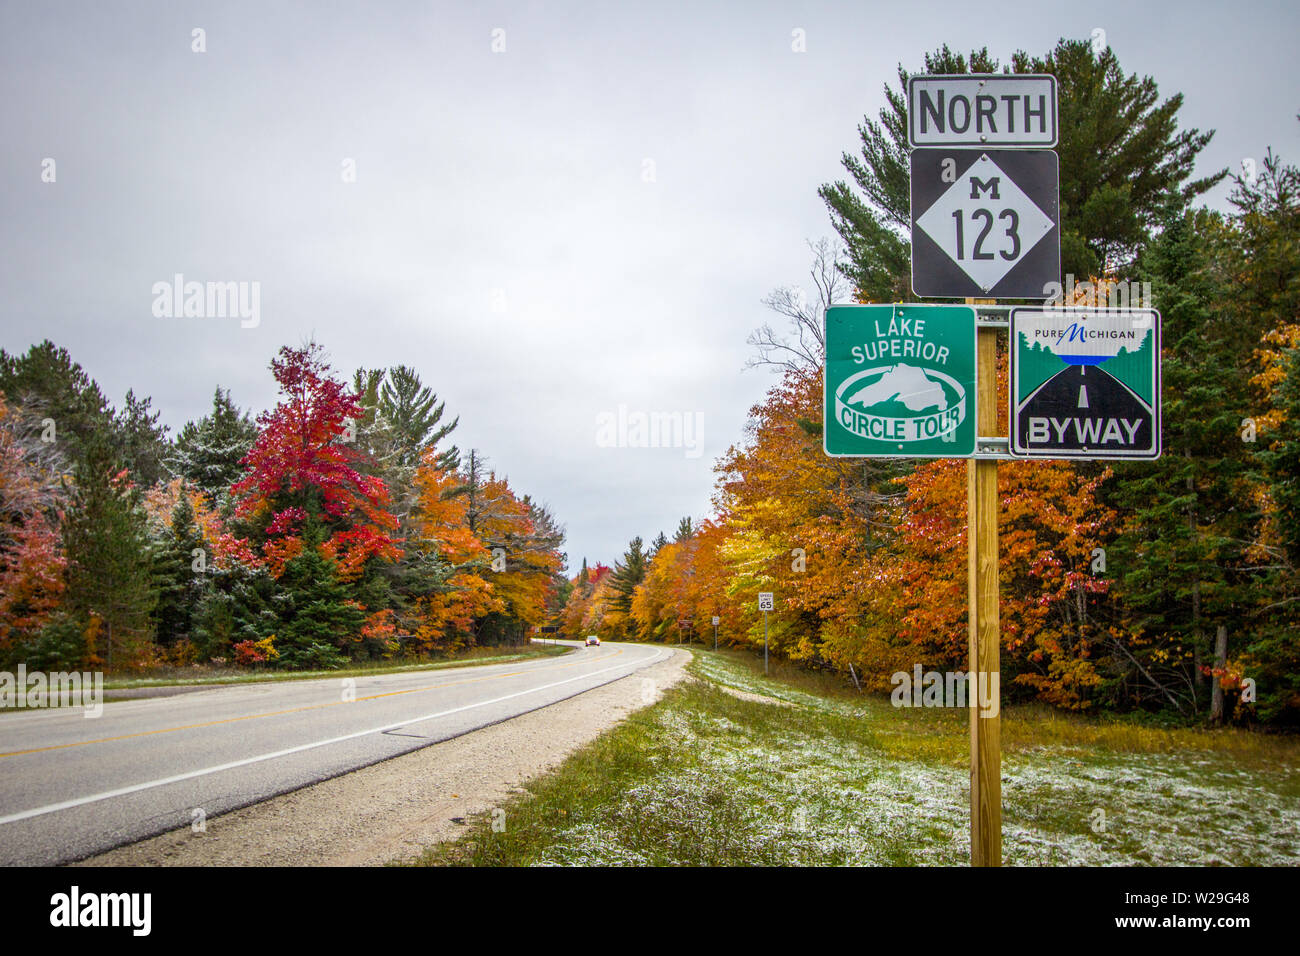 Paradise, Michigan, Stati Uniti d'America - 13 Ottobre 2018: Michigan Scenic Byway con Lago Superior Scenic Circle Tour segno su un territorio rurale Michigan due corsie. Foto Stock